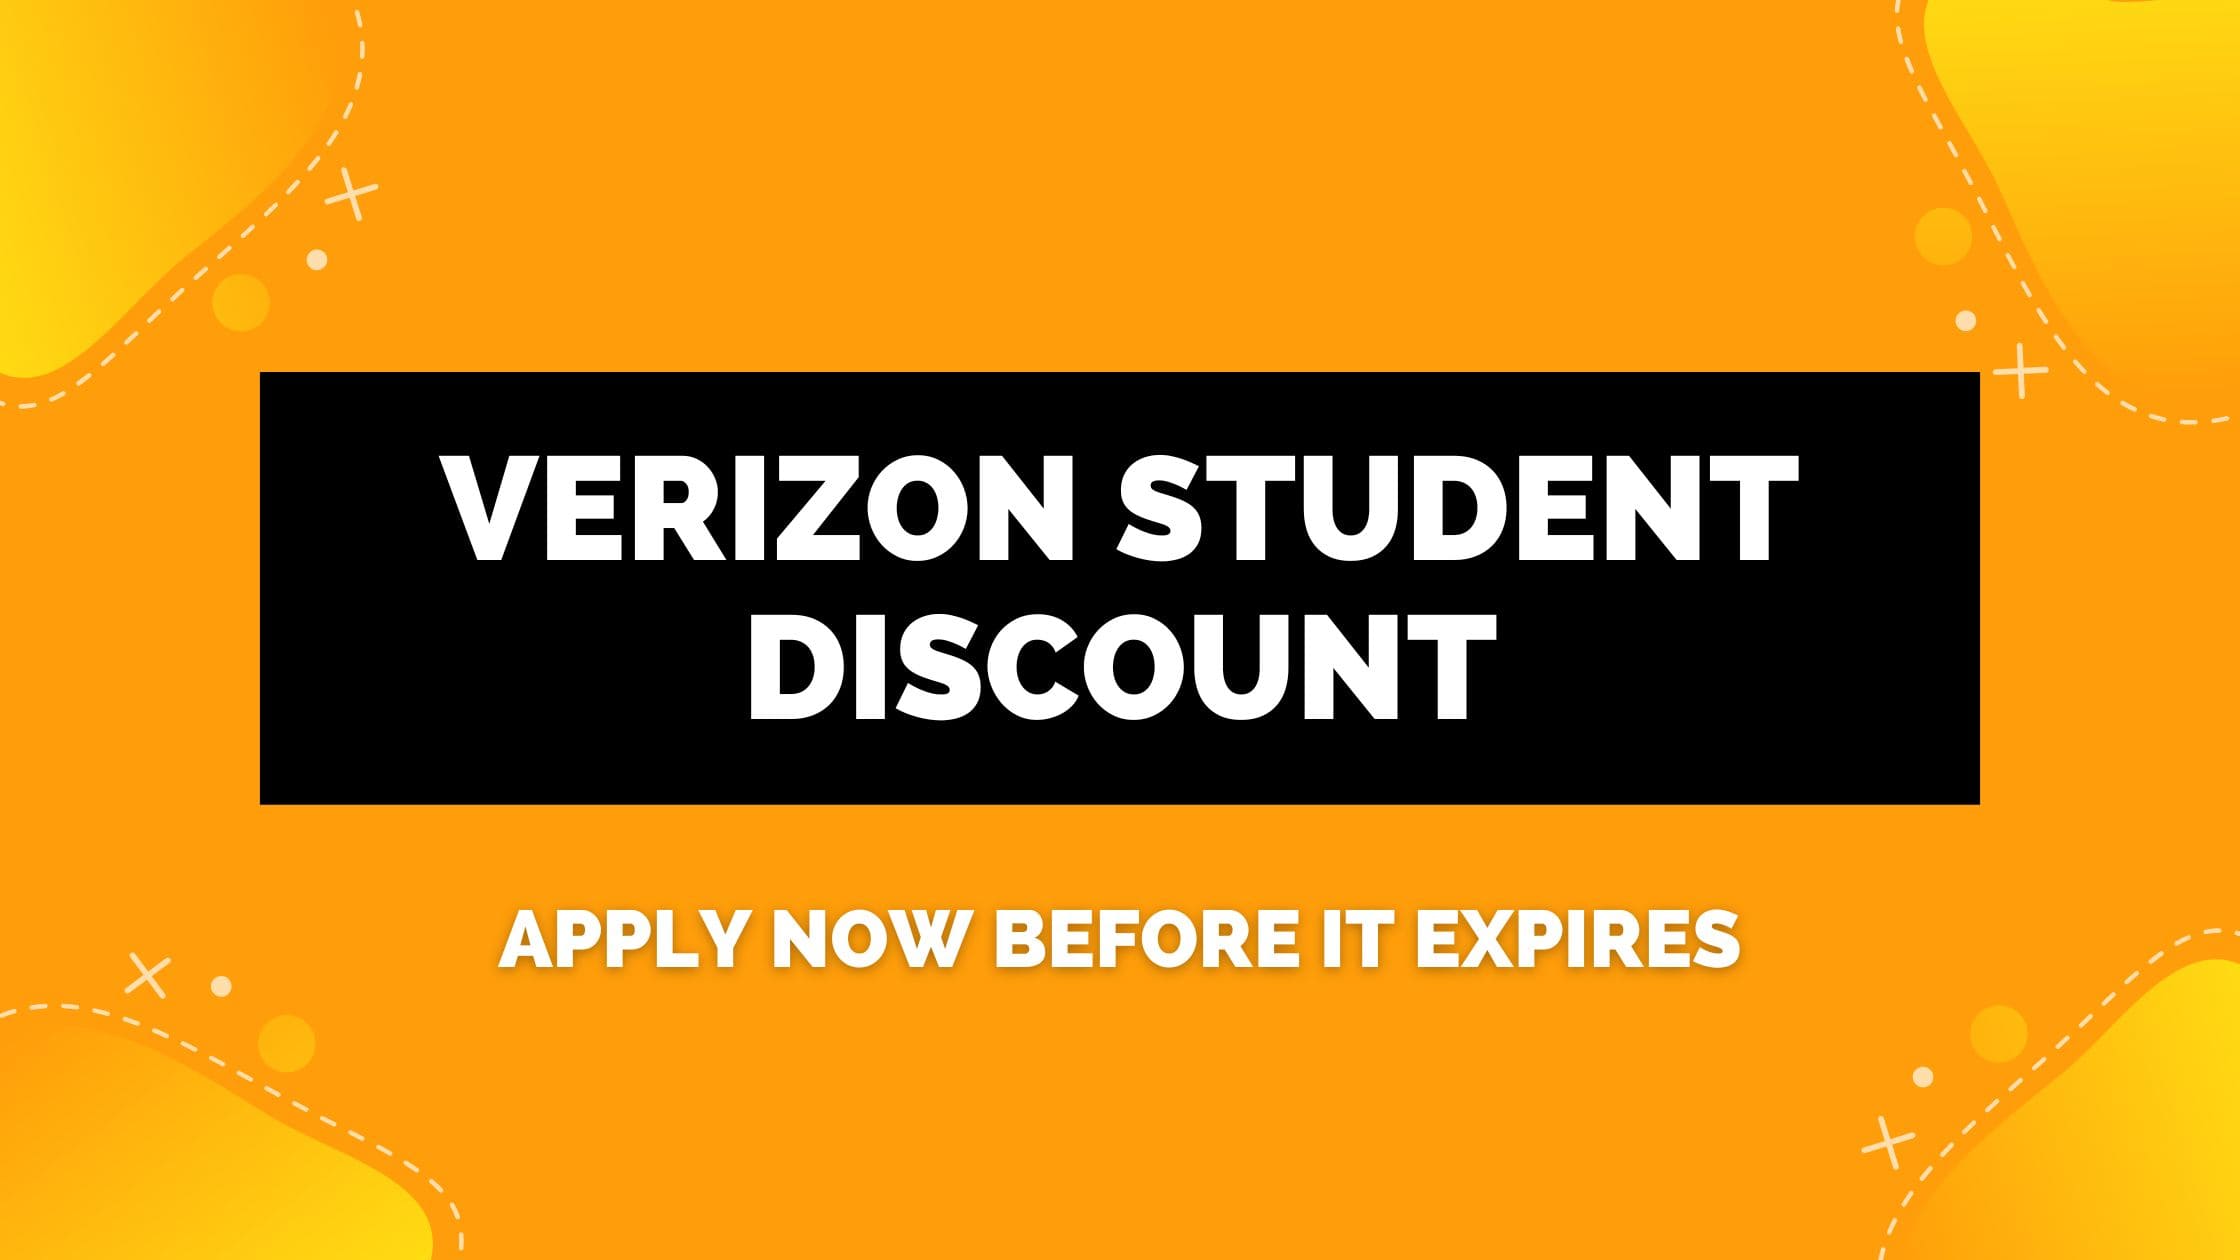 Verizon Student Discount: Apply Now Before it Expires